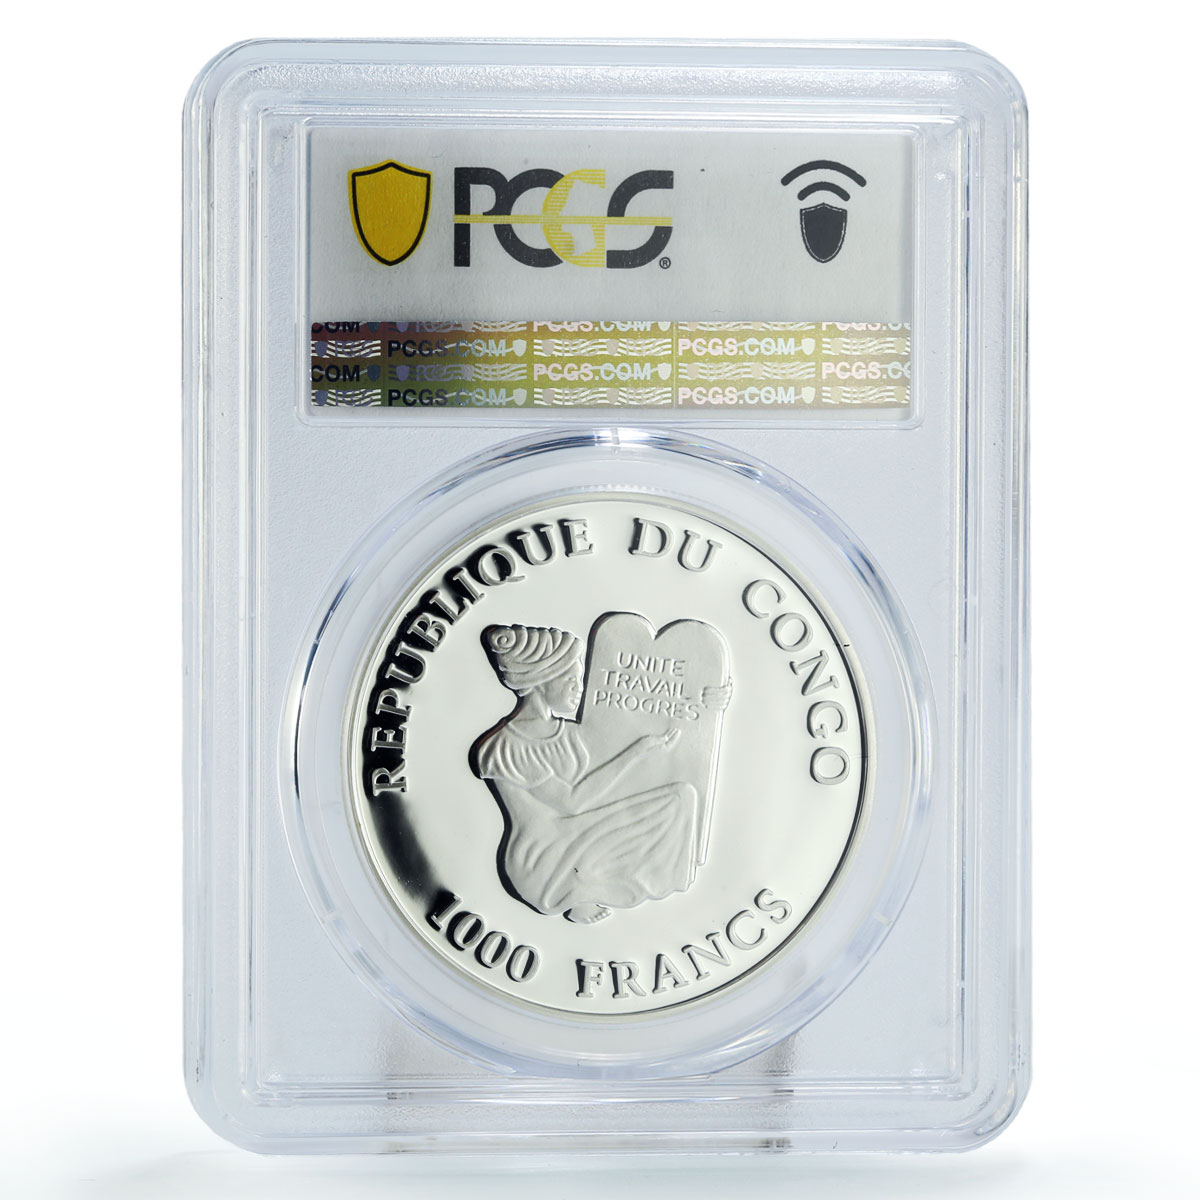 Congo 1000 francs Conservation Wildlife Gorilla Fauna PR70 PCGS silver coin 2003